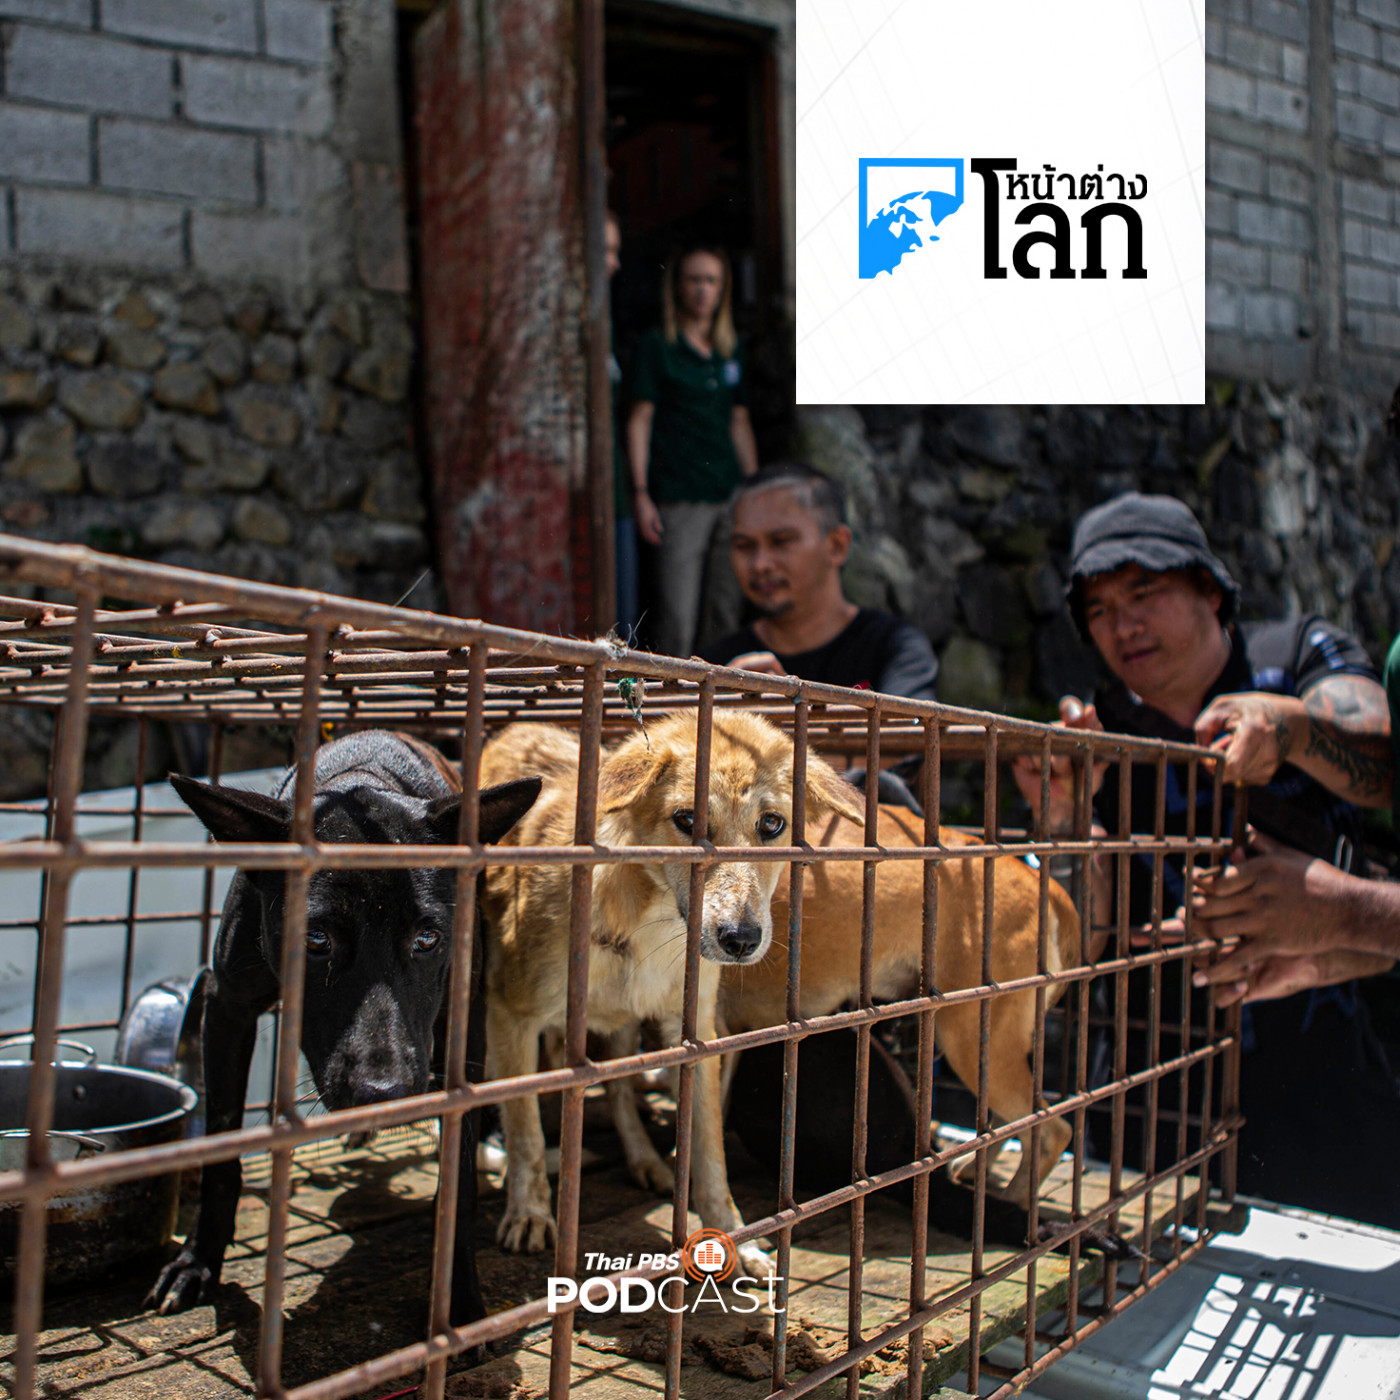 หน้าต่างโลก : ตลาดปลอดเนื้อสุนัขและแมวแห่งแรกในอินโดนีเซีย